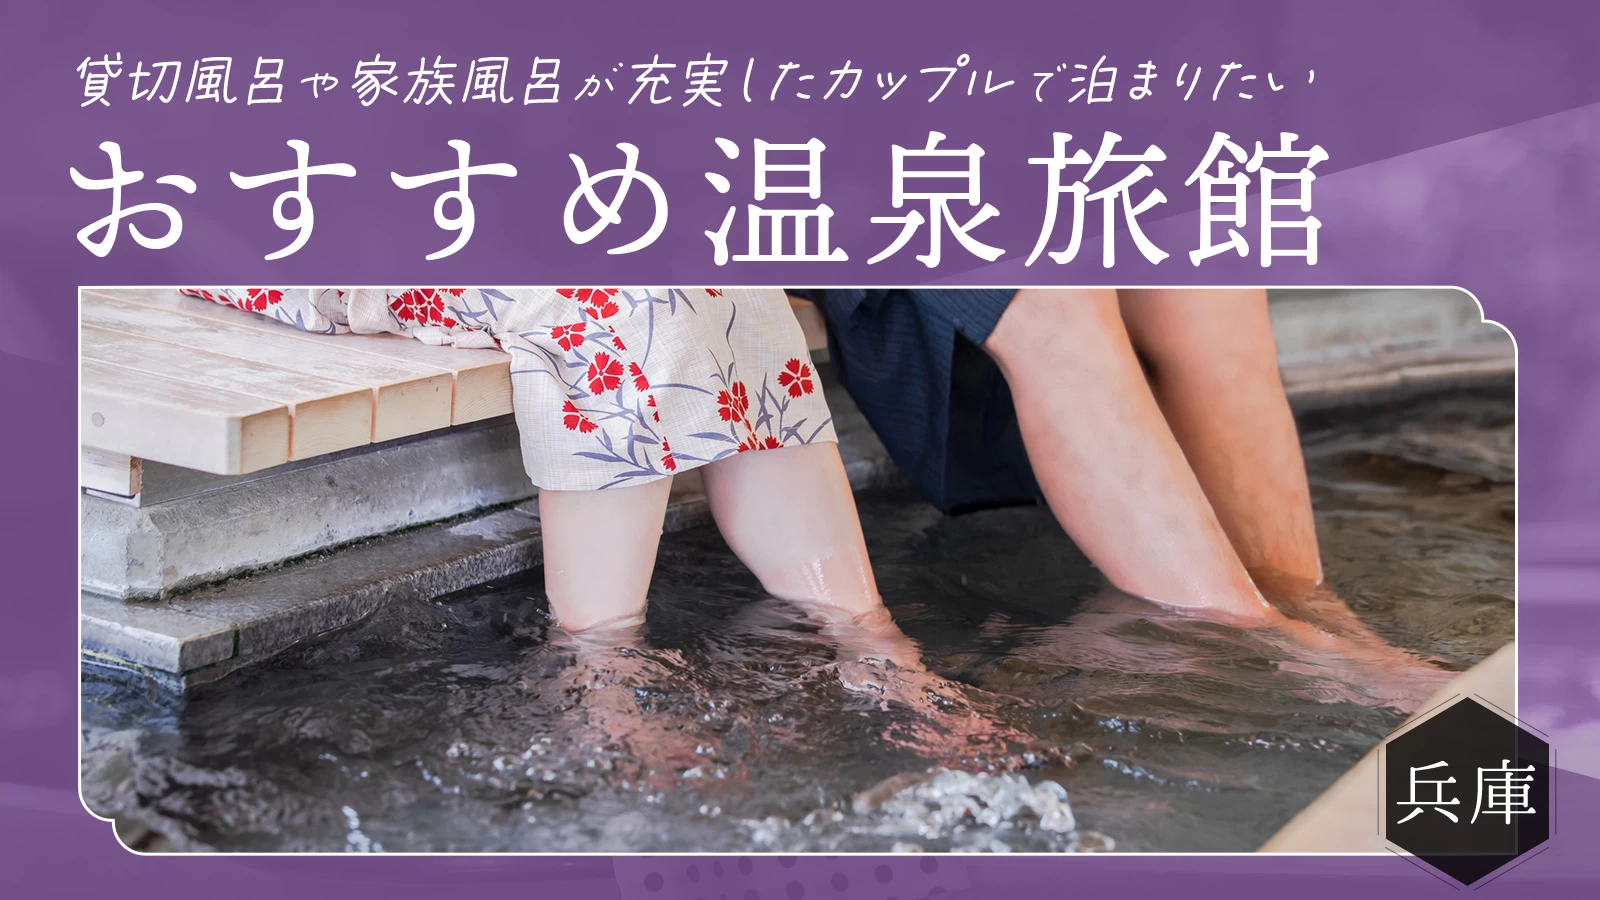 【兵庫】貸切風呂や家族風呂が充実したカップルで泊まりたいおすすめ温泉宿9選